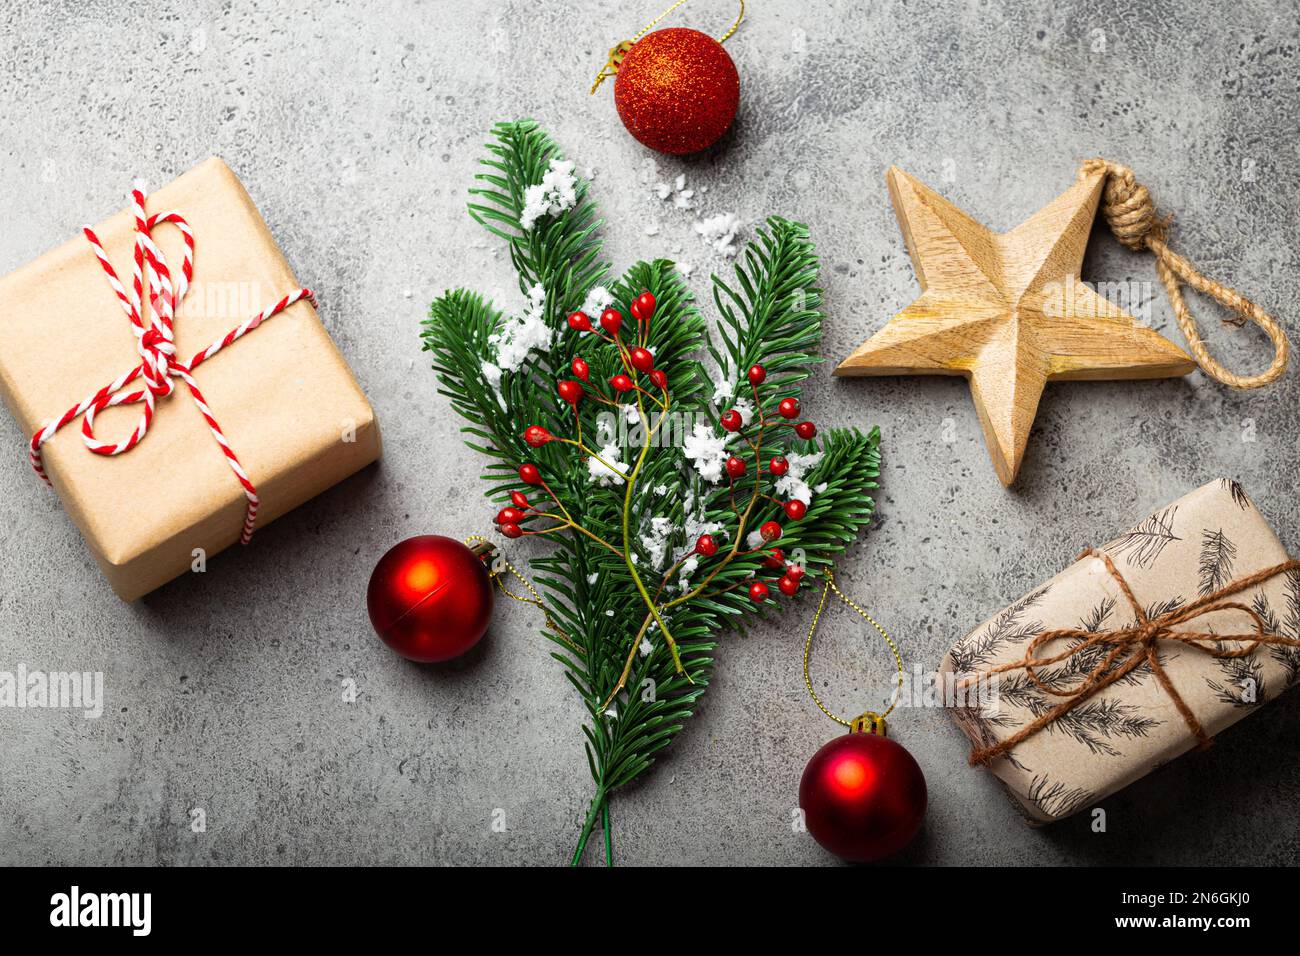 Composition de Noël et du nouvel an avec branche de sapin vert dans la neige, baies rouges, décorations de Noël et cadeaux enveloppés sur pierre grise Banque D'Images